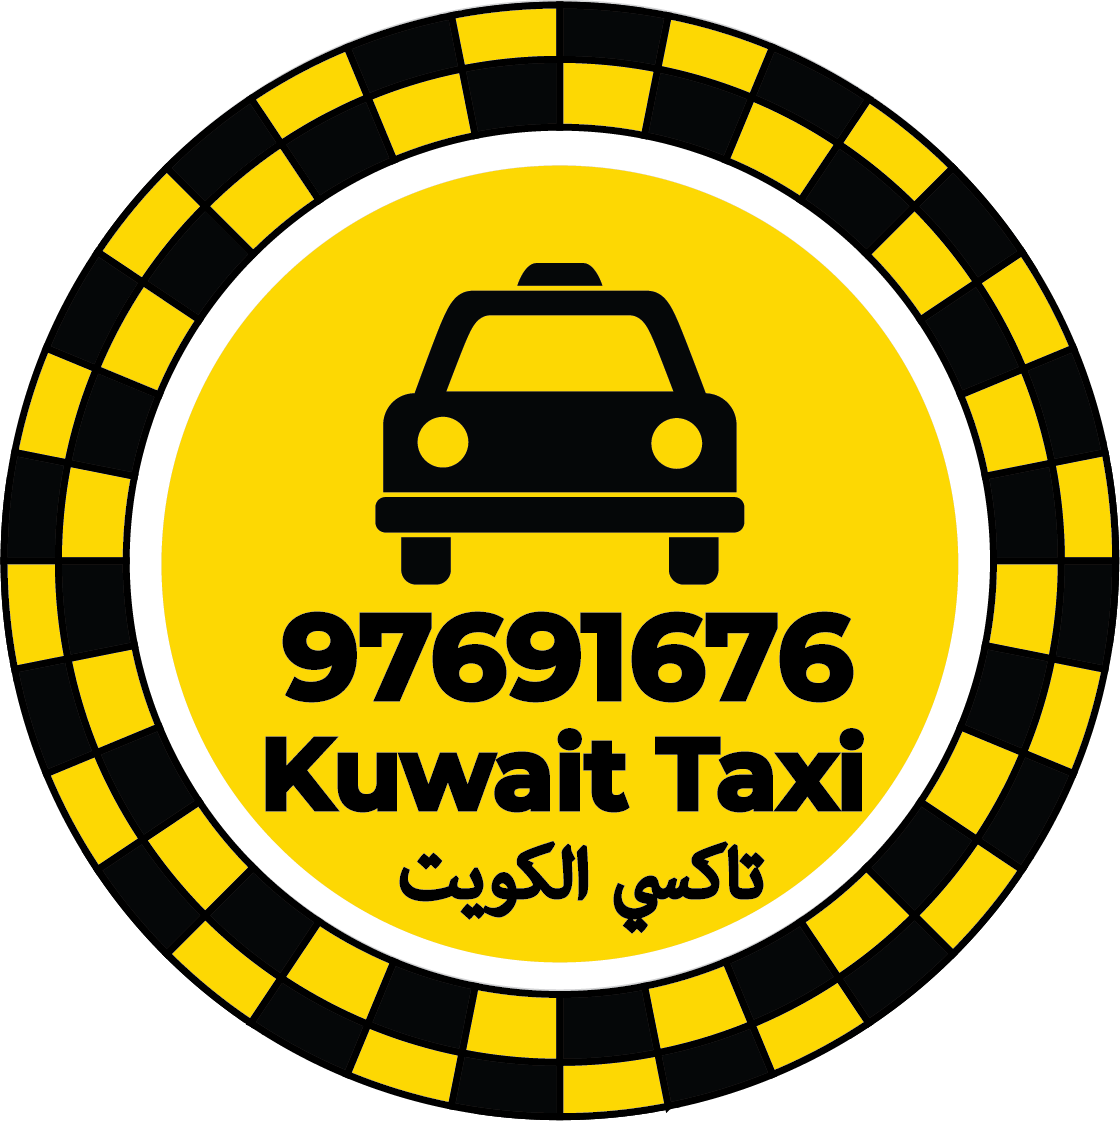 تاكسي لمطا رالكويت - خدمات تكسي لمطار